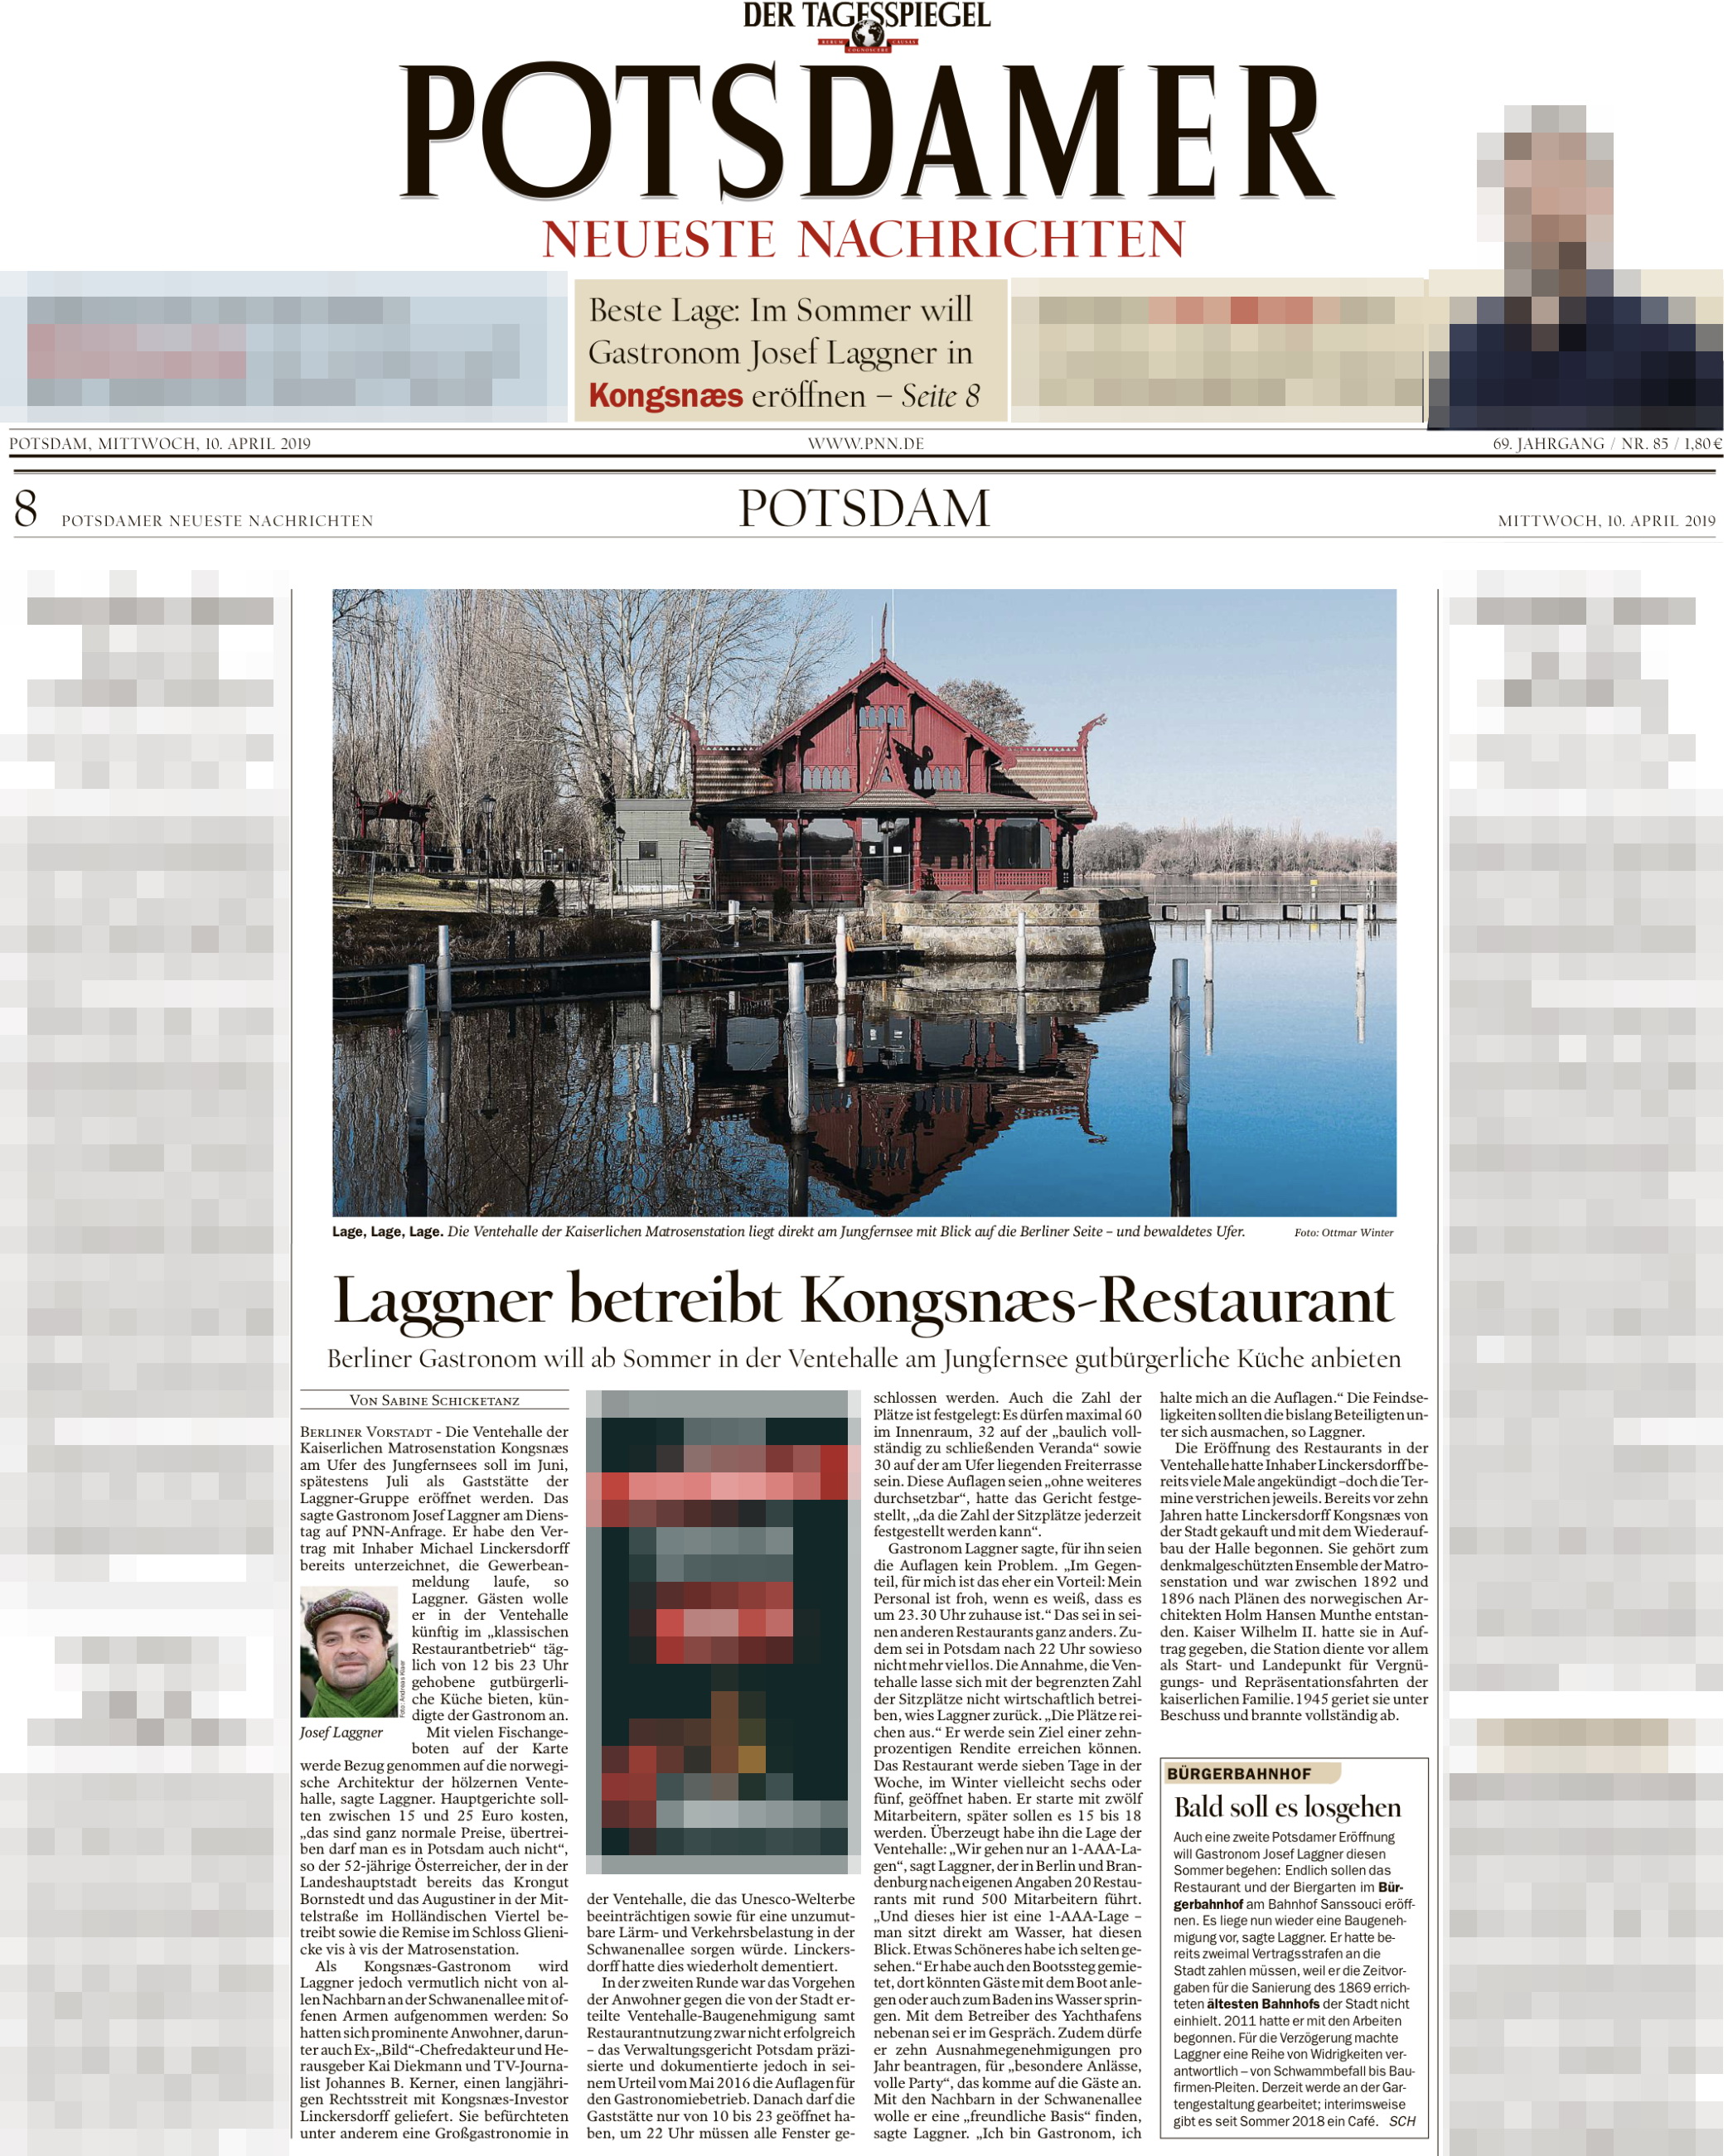 Potsdamer Neueste Nachrichten 10.04.2019